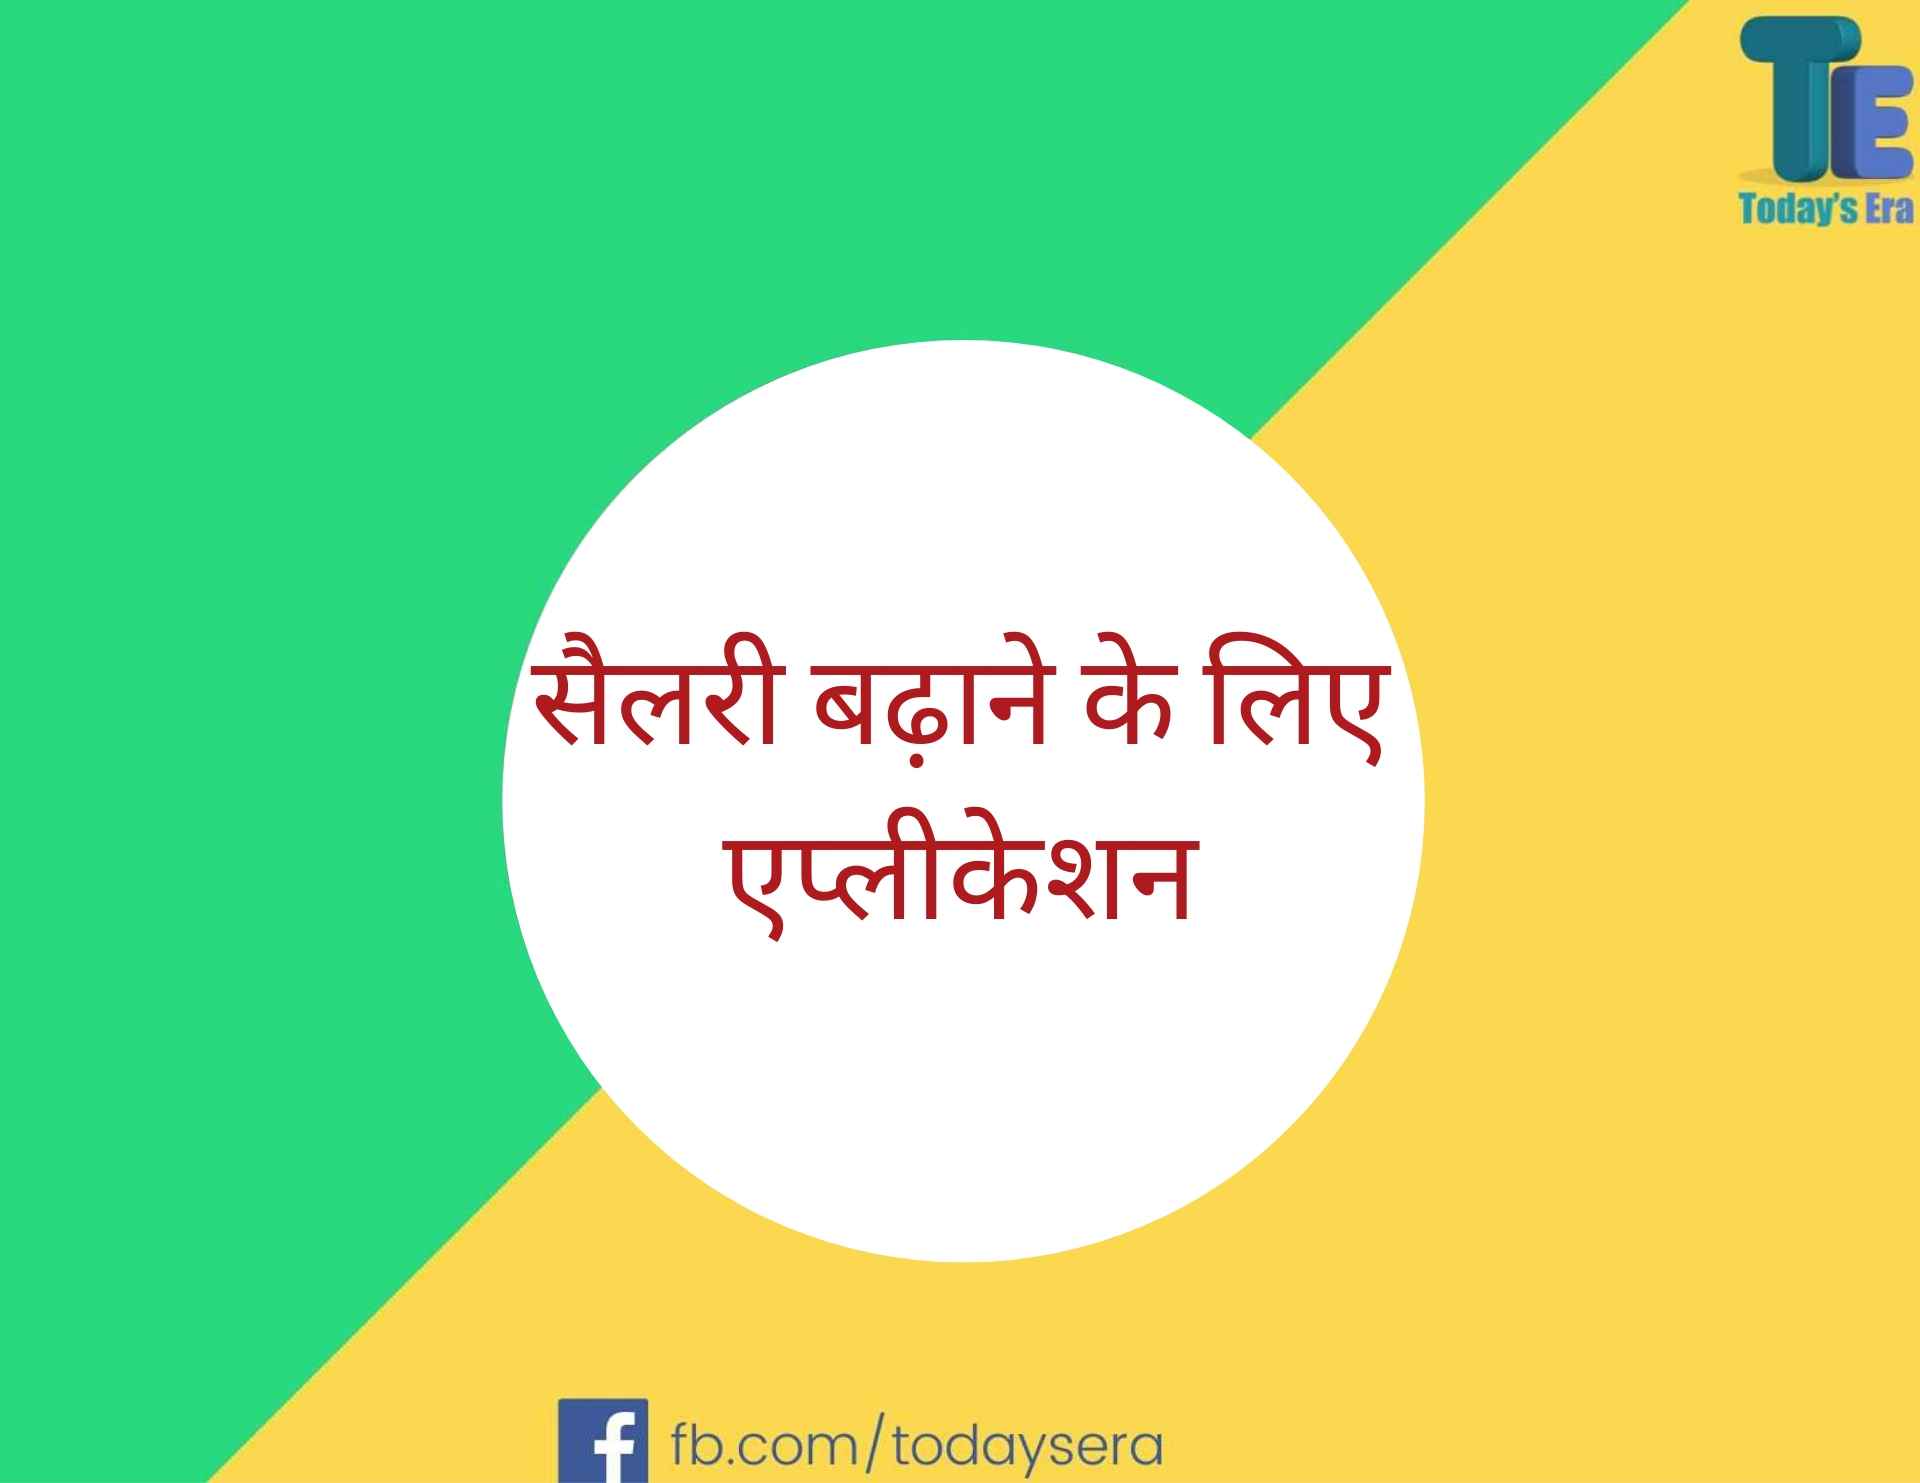 Salary Badhane Ke Liye Application in Hindi सैलरी बढ़ाने के लिए एप्लीकेशन कैसे लिखें